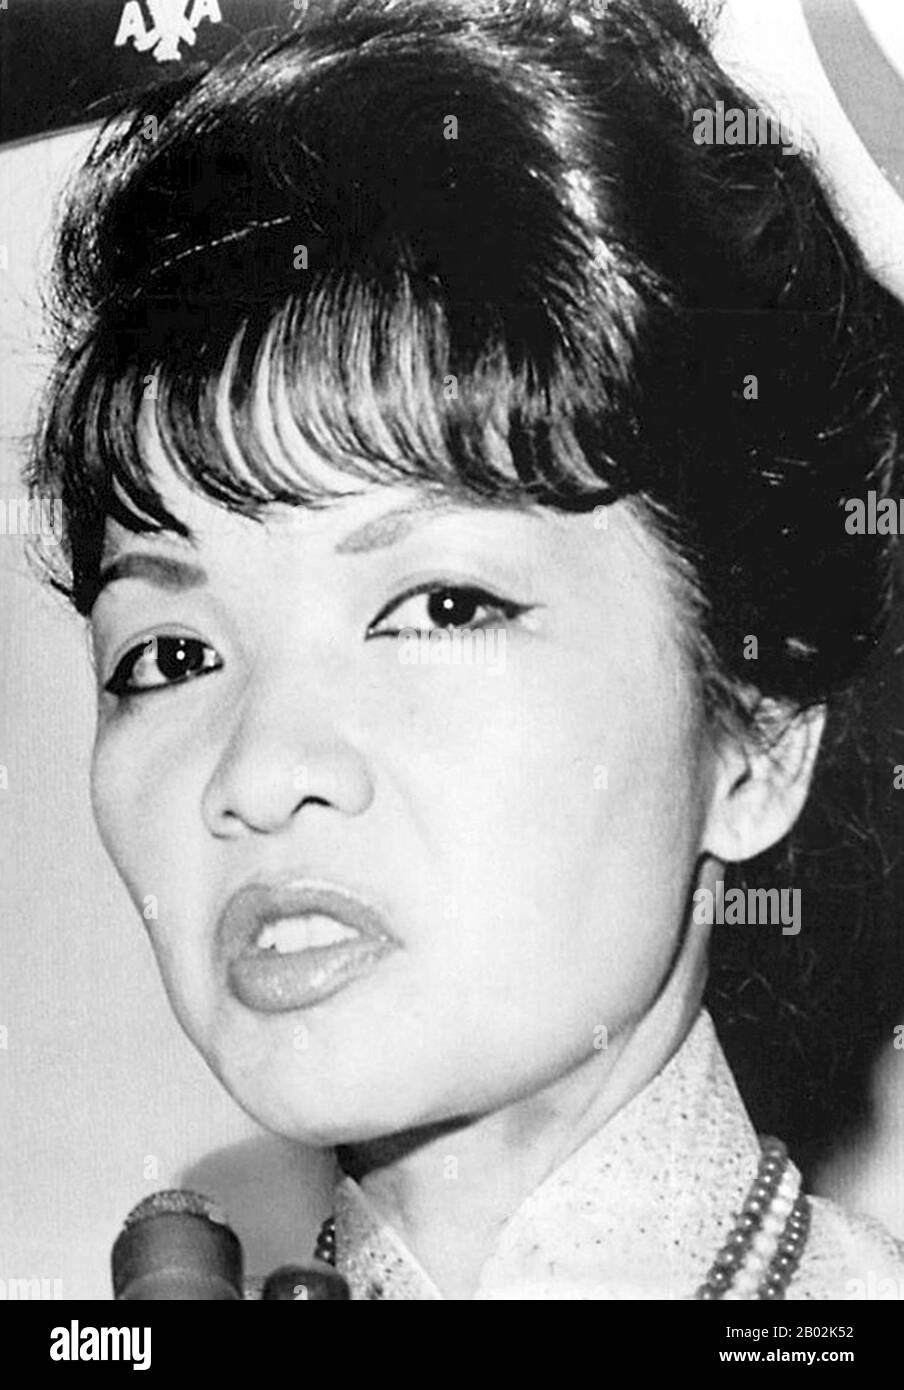 TRAN le Xuan (née le 15 avril 1924 à Hanoi, Vietnam), populairement connue sous le nom de Madame Nhu mais plus correctement Madame Ngo Dinh Nhu, a été considérée comme la première Dame du Sud Vietnam de 1955 à 1963. Elle a été la femme De L'Ong Dinh Nhu, frère et conseiller en chef de l'Ong Dinh Diem. Comme Diem était un baccalauréat tout au long de la vie, et parce que les Nhus vivaient au Palais de l'indépendance, elle était considérée comme la première Dame. Diem a souvent nommé des membres de sa famille à des postes élevés, son père est devenu l'ambassadeur aux États-Unis alors que sa mère, ancienne reine de la beauté, était l'observateur du sud du Vietnam à la Na United Banque D'Images